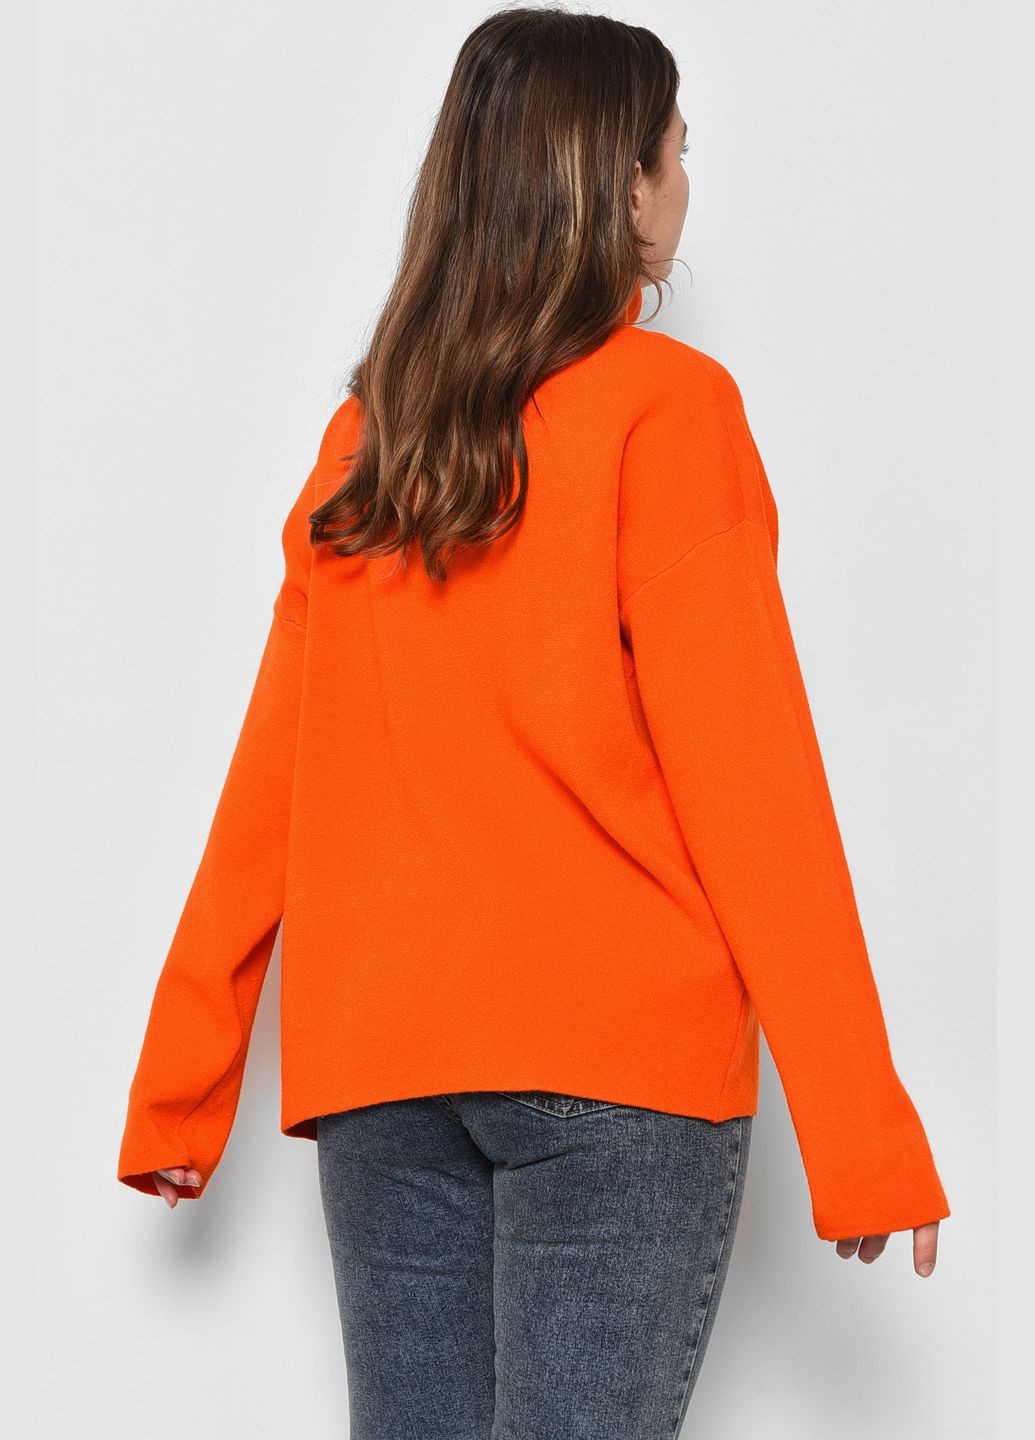 Оранжевый зимний свитер женский полубатальный оранжевого цвета пуловер Let's Shop